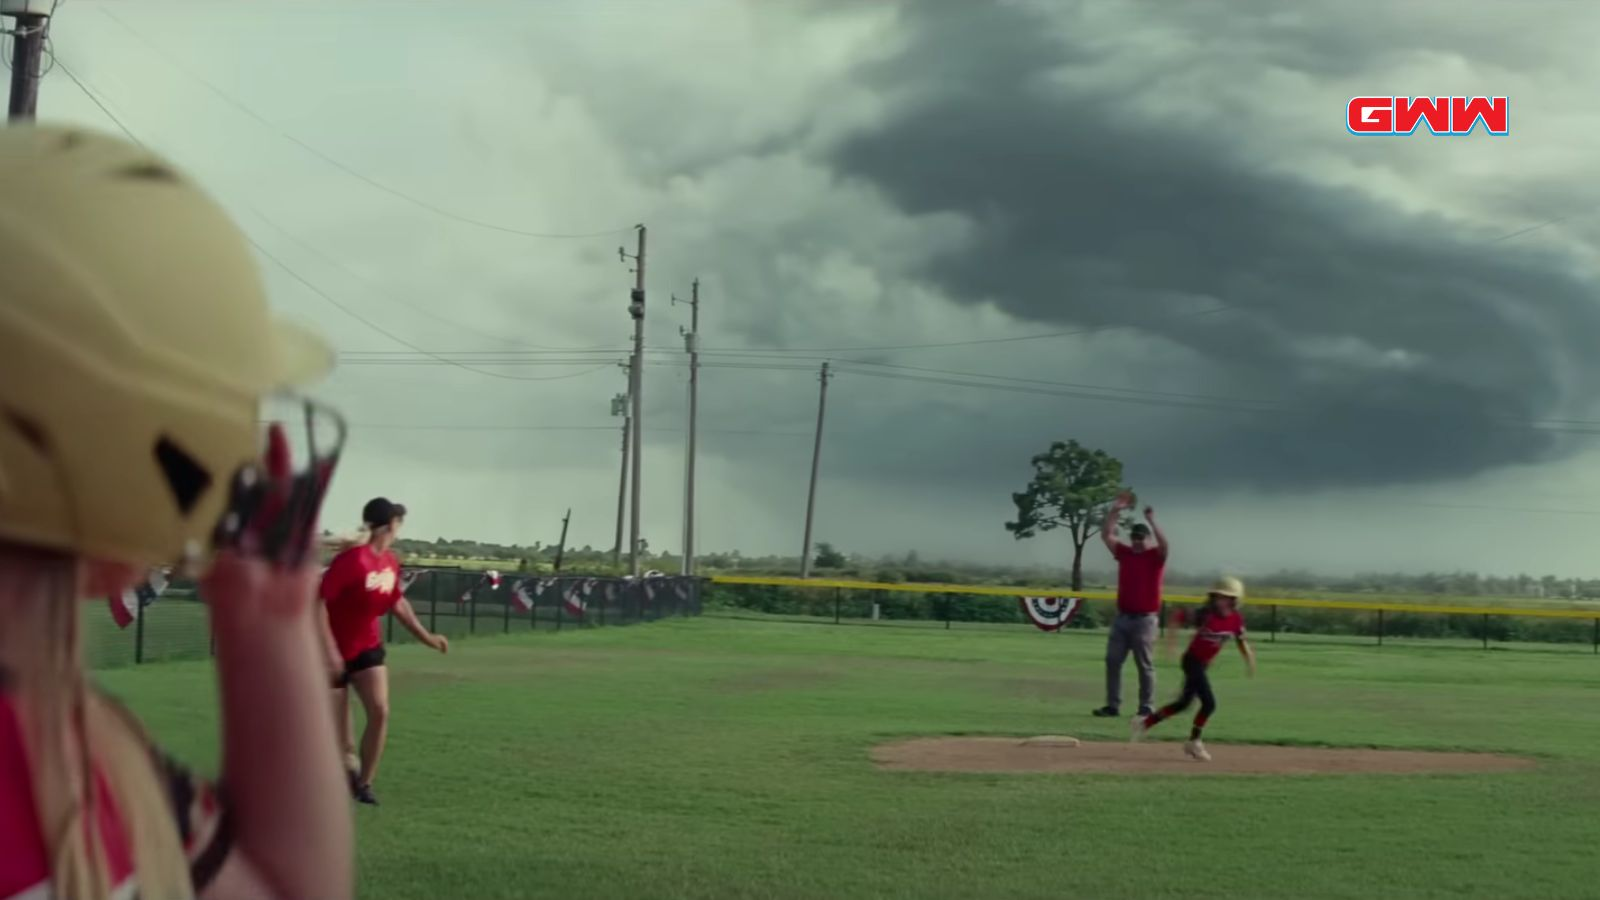 Un juego de béisbol interrumpido por un tornado, película Twister